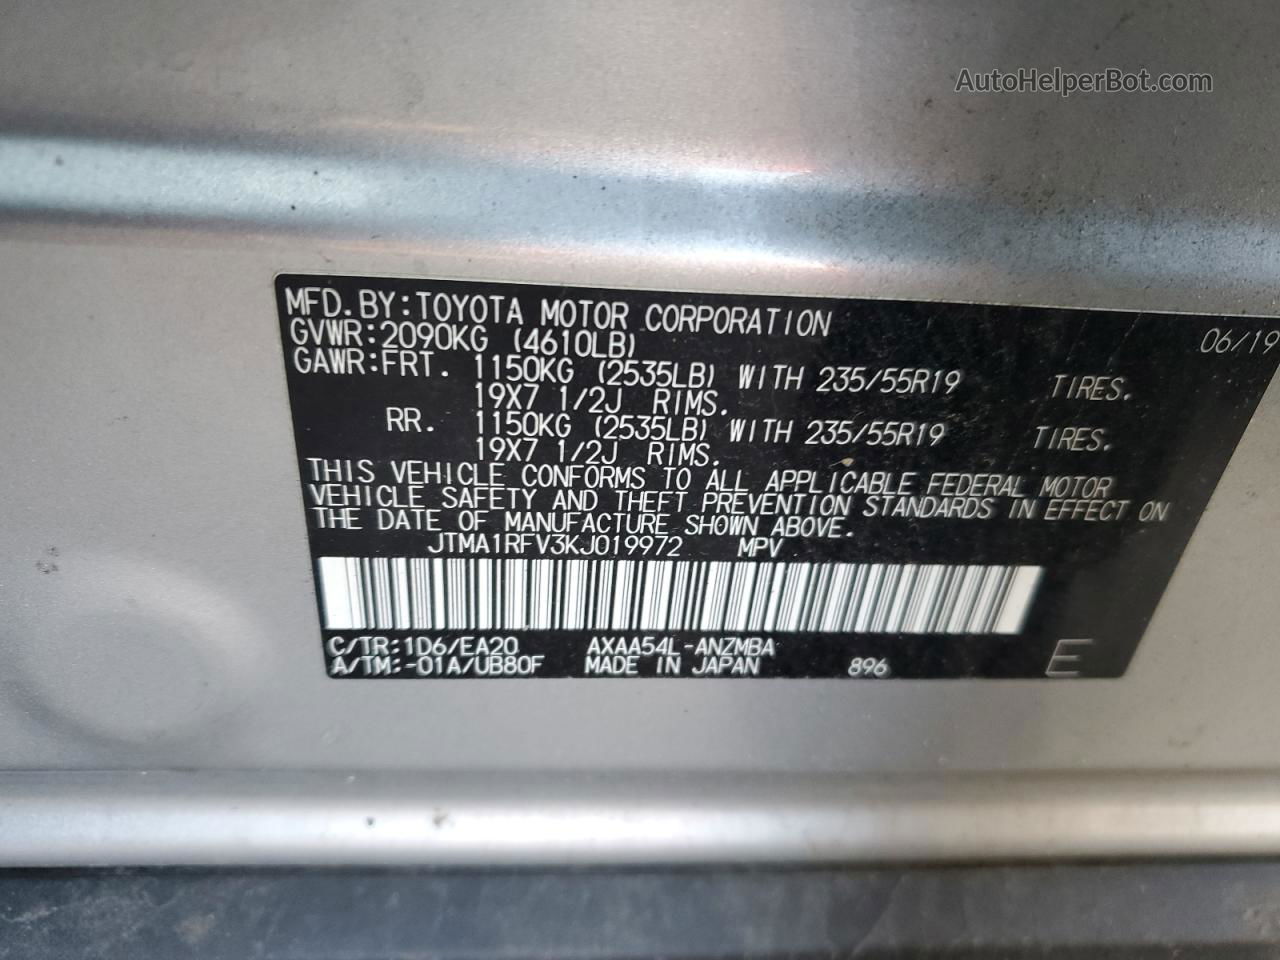 2019 Toyota Rav4 Xle Premium Silver vin: JTMA1RFV3KJ019972